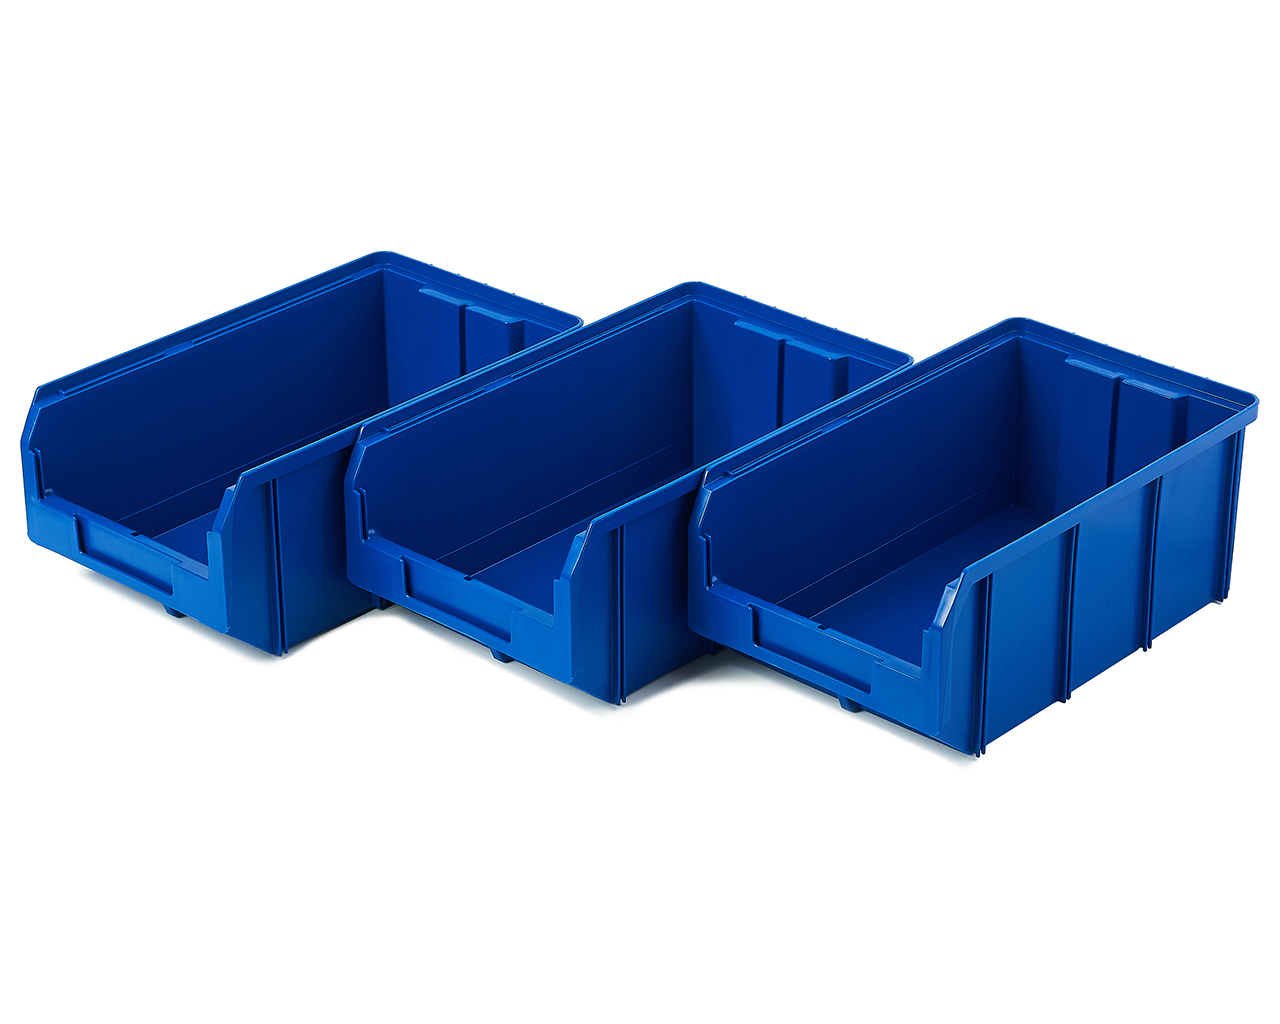 Пластиковый ящик Стелла-техник V-3-К3-синий , 342х207х143мм, комплект 3 штуки сумка для обуви на молнии наружный карман синий